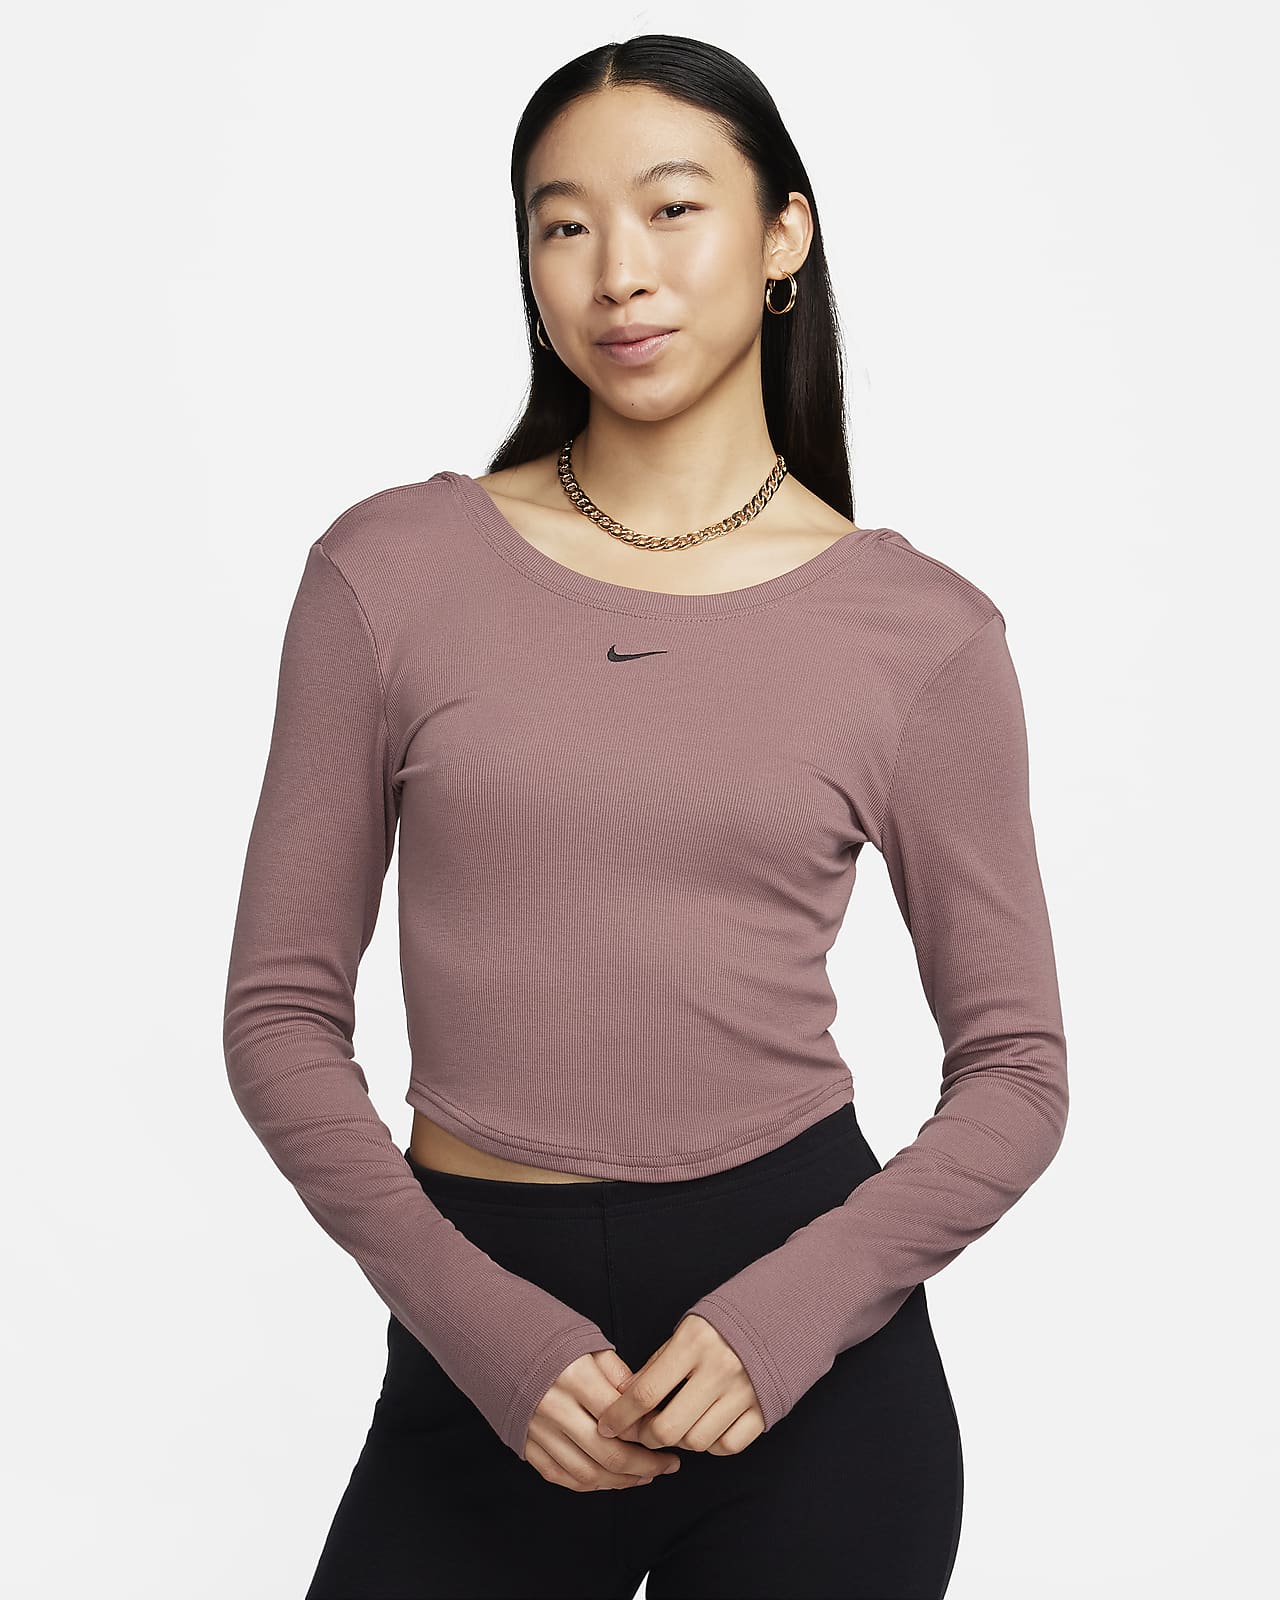 Γυναικεία μακρυμάνικη μπλούζα σε εφαρμοστή γραμμή με διακριτική ριμπ ύφανση και βαθύ στρογγυλό άνοιγμα πίσω Sportswear Chill Knit